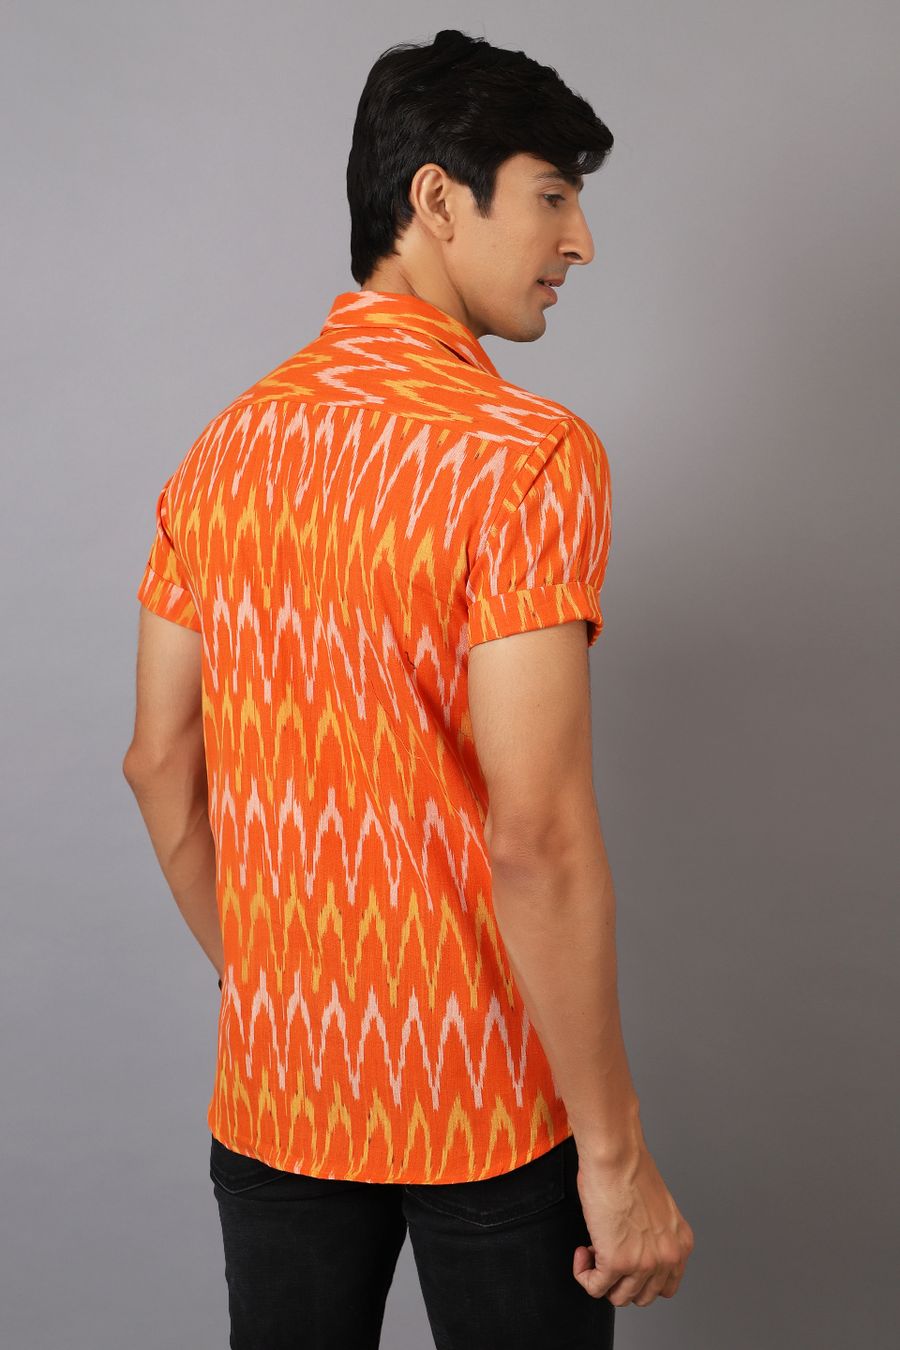 Ikat Cotton Orange Shirt